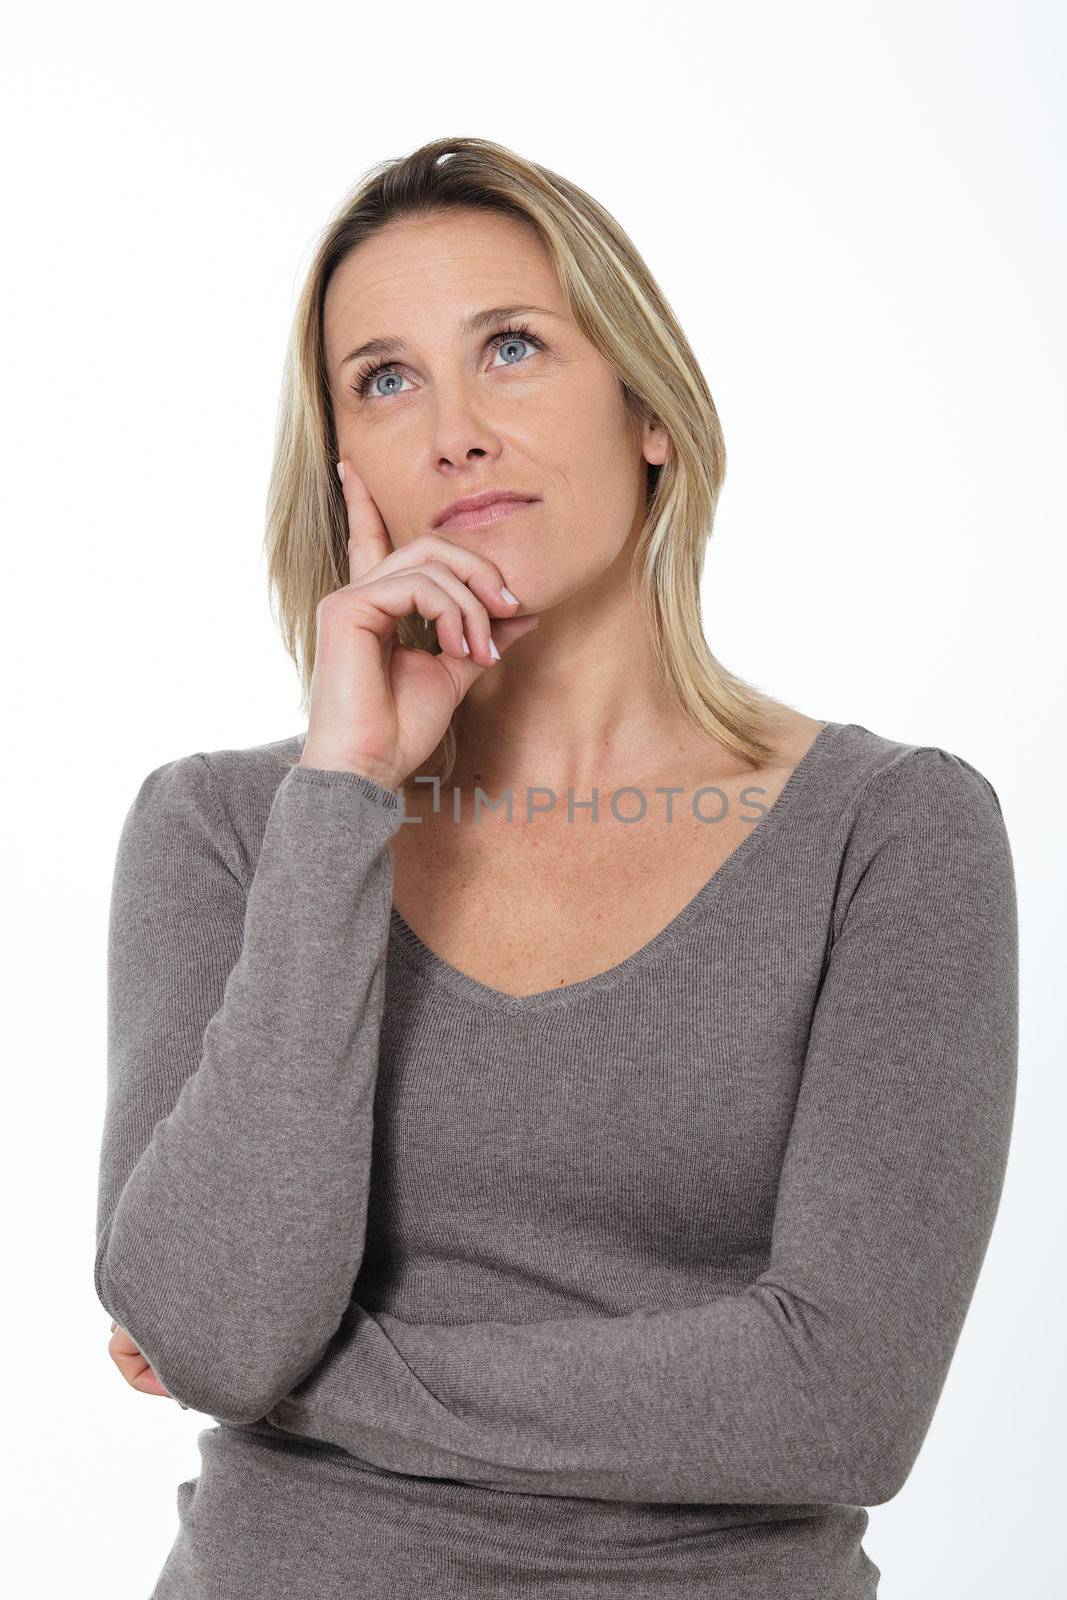 pensive woman by vwalakte